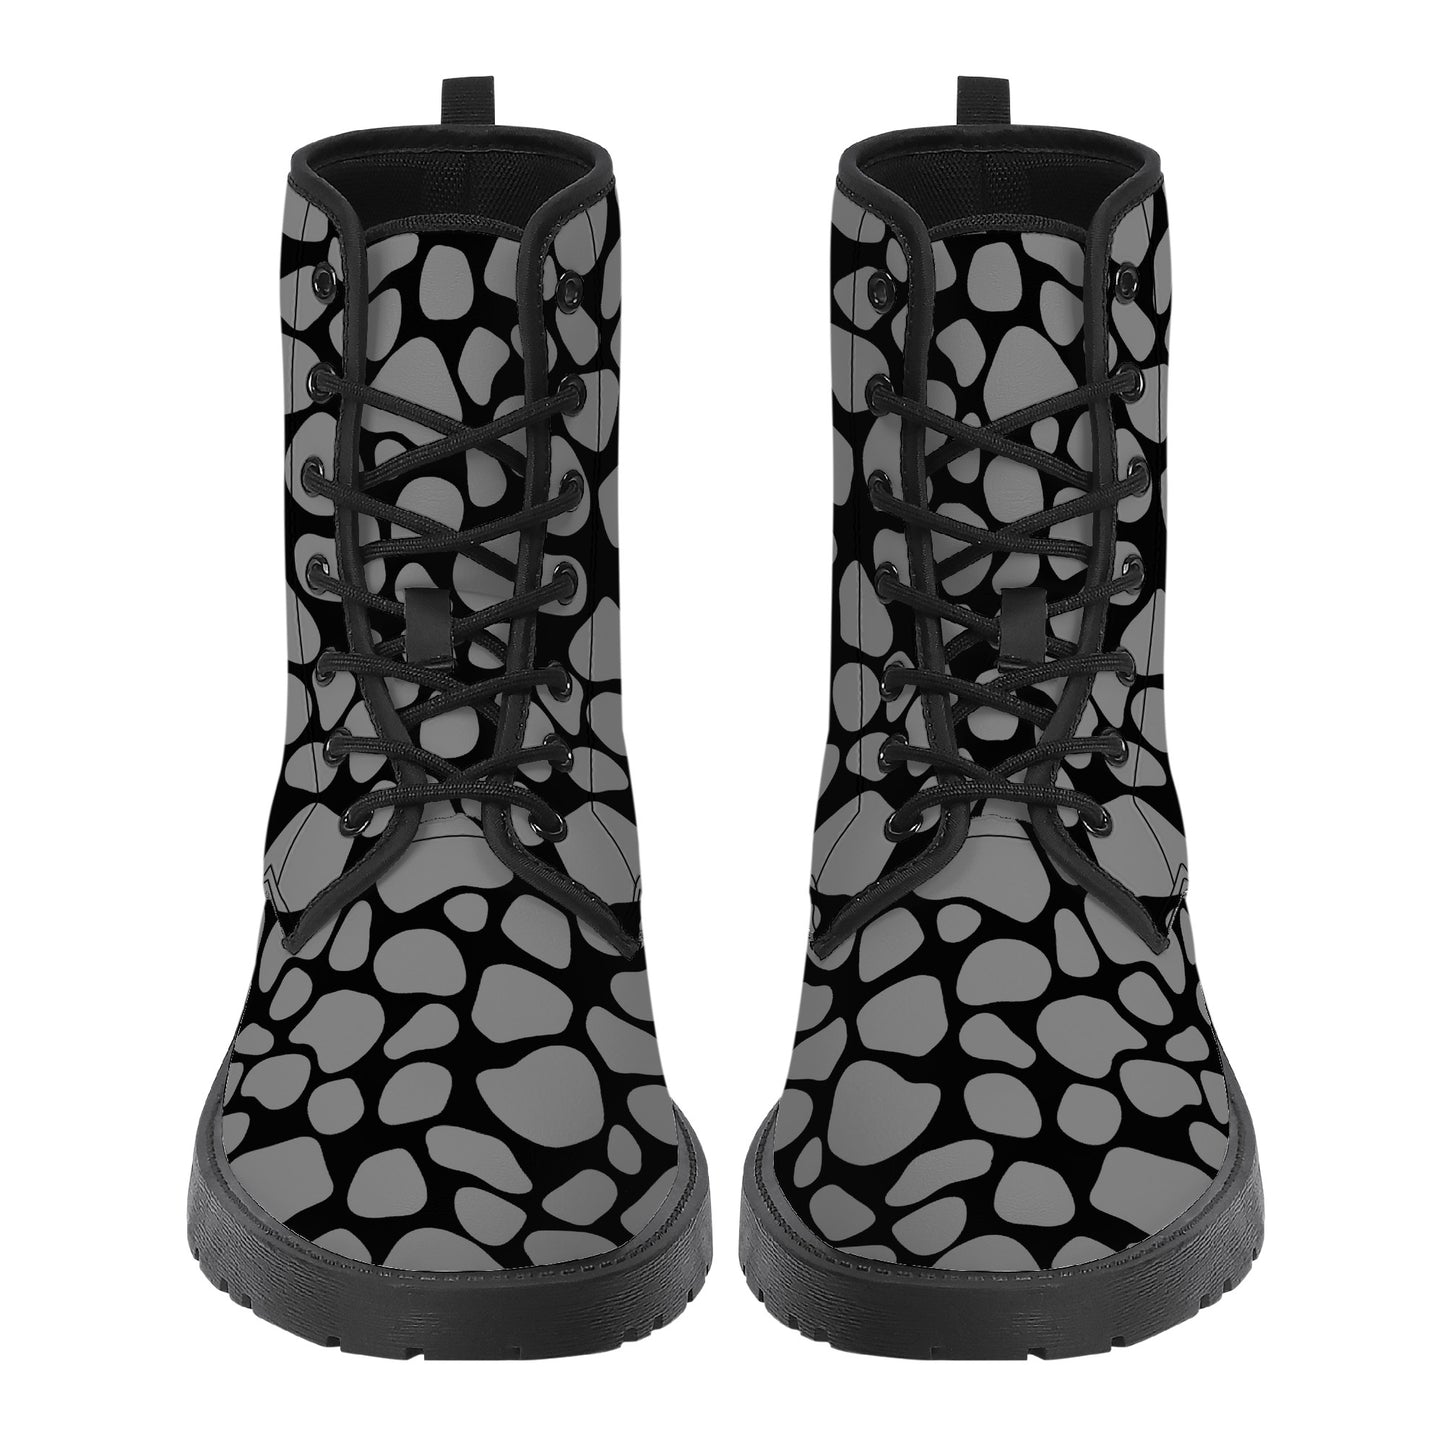 "Mono Giraffe" Eco-friendly Boots